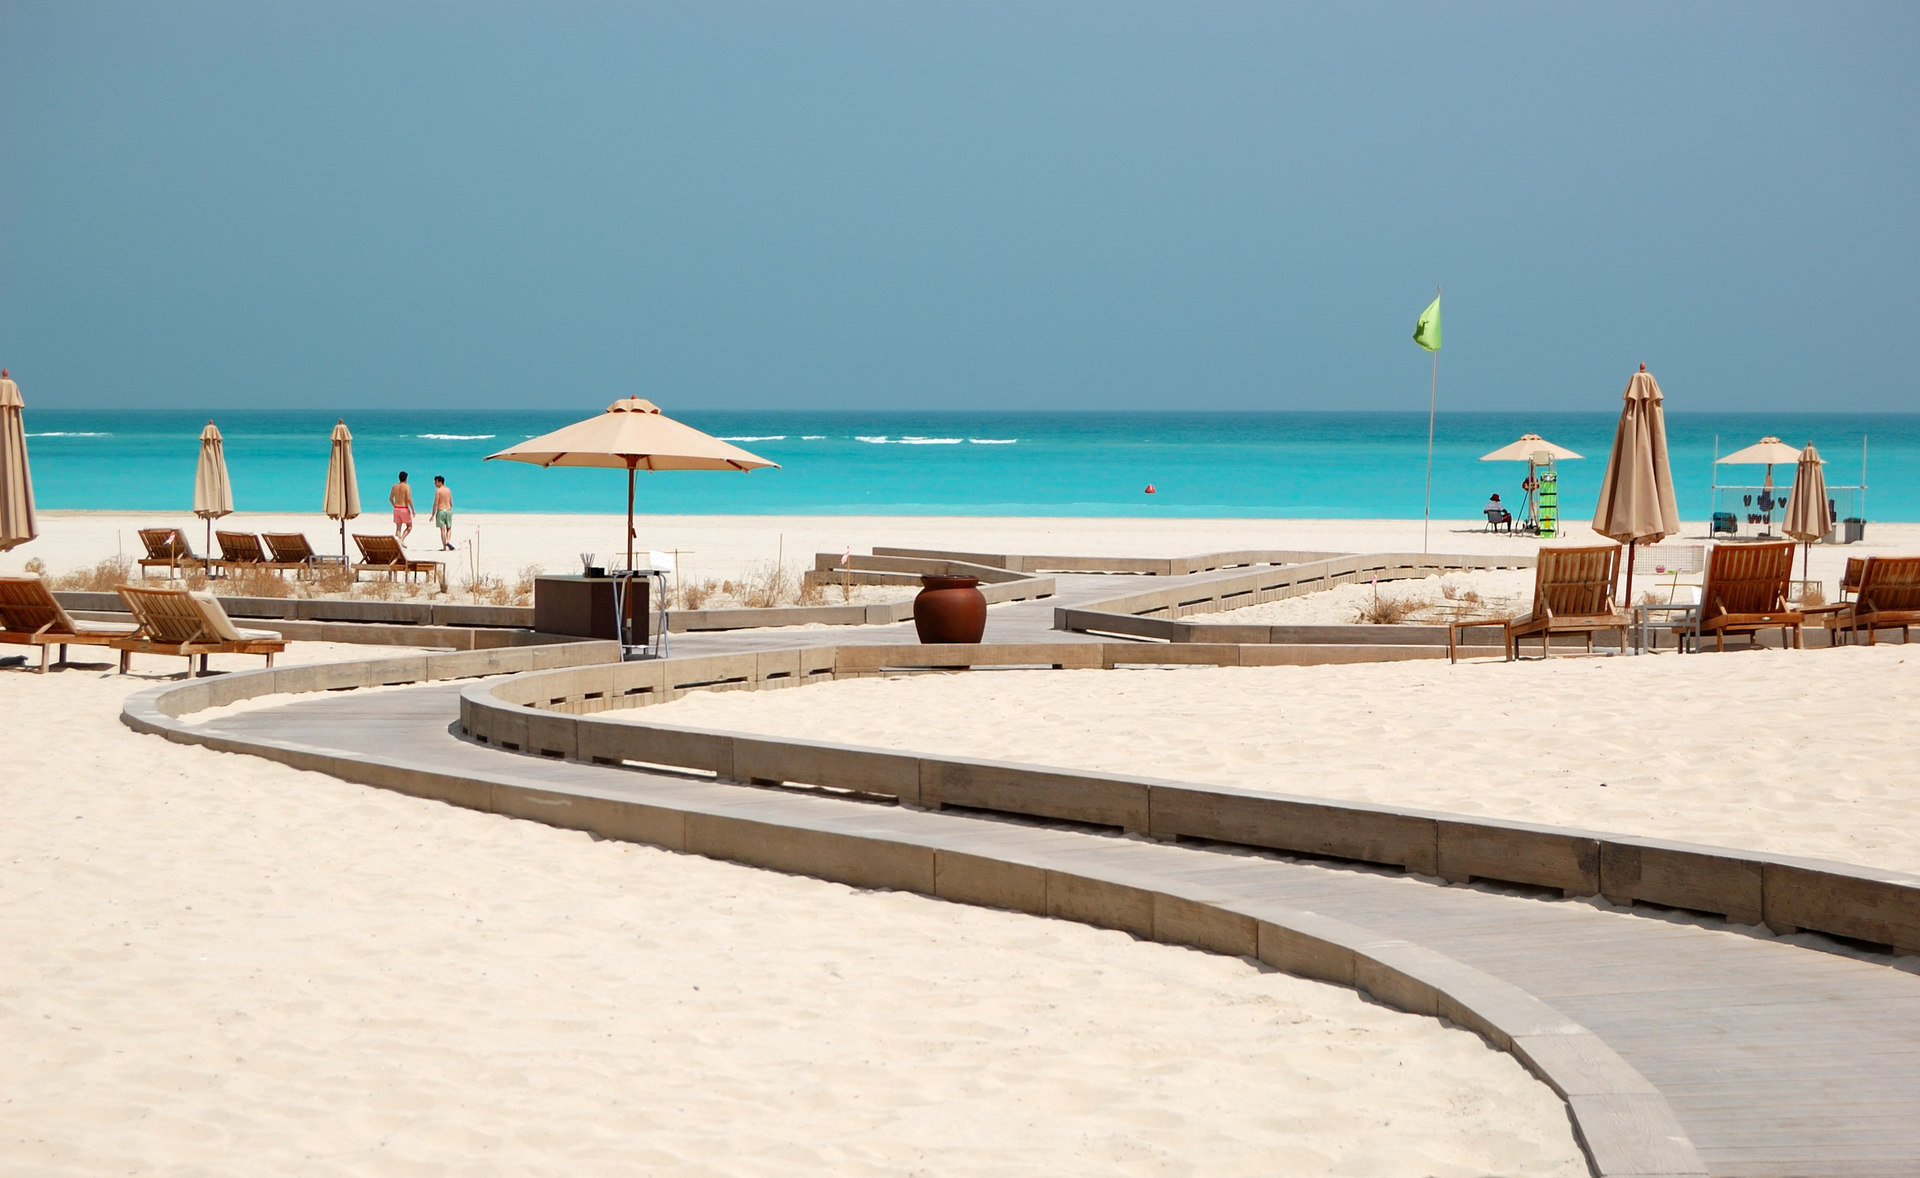 Пляж Абу-Даби